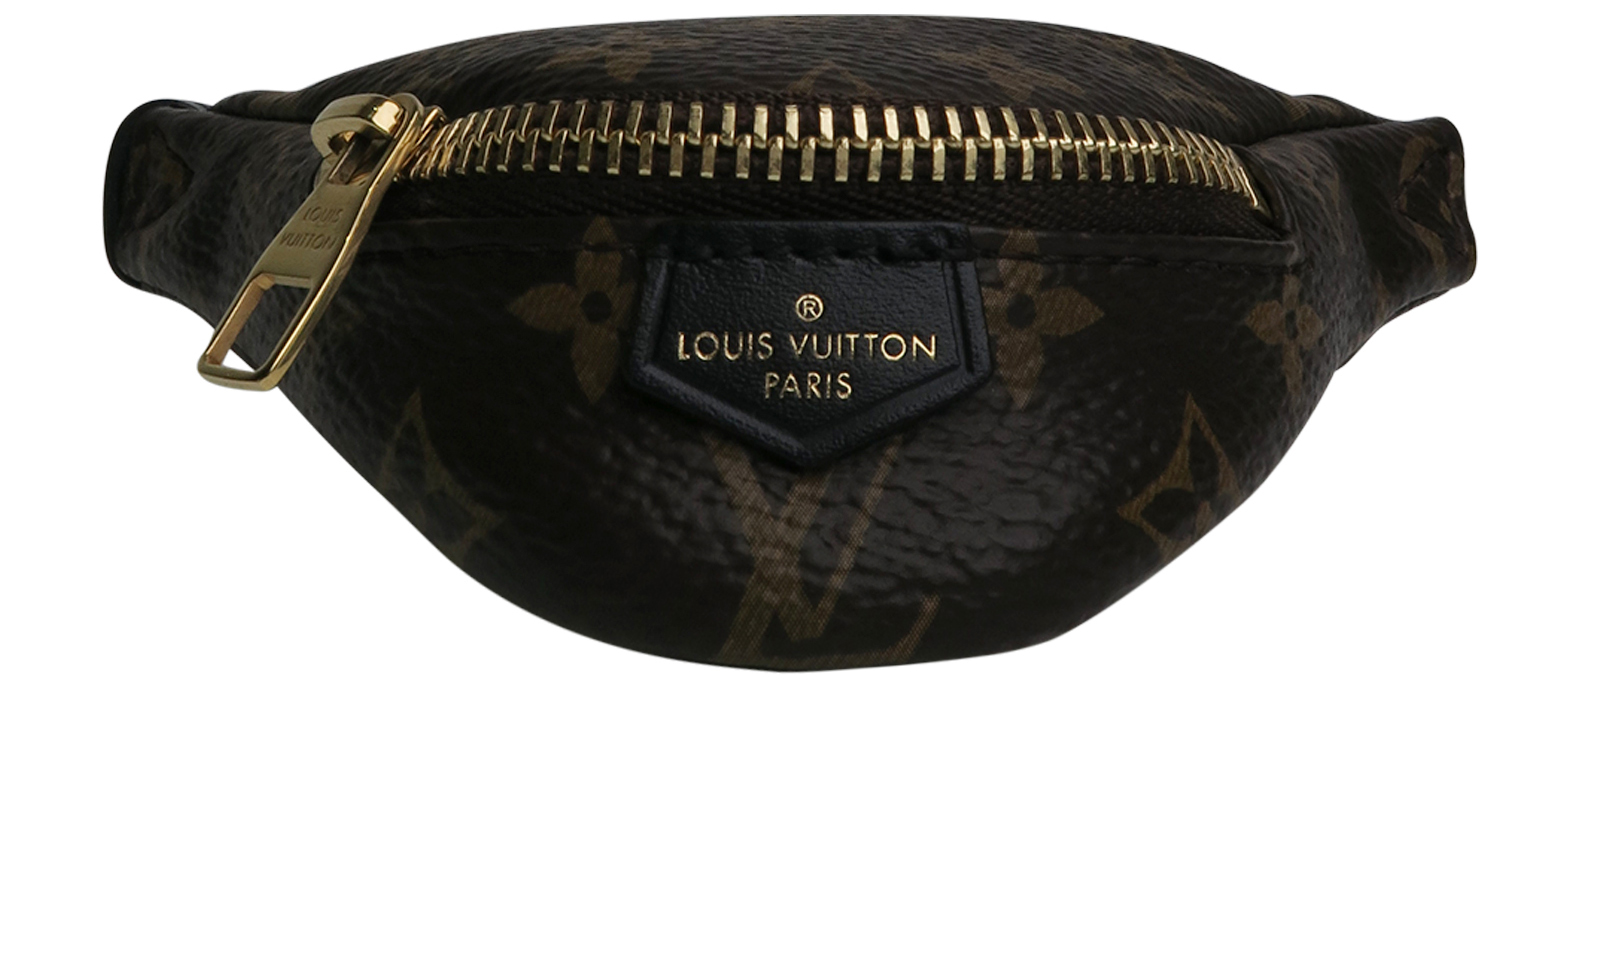 Louis Vuitton Fanny Pack -  UK